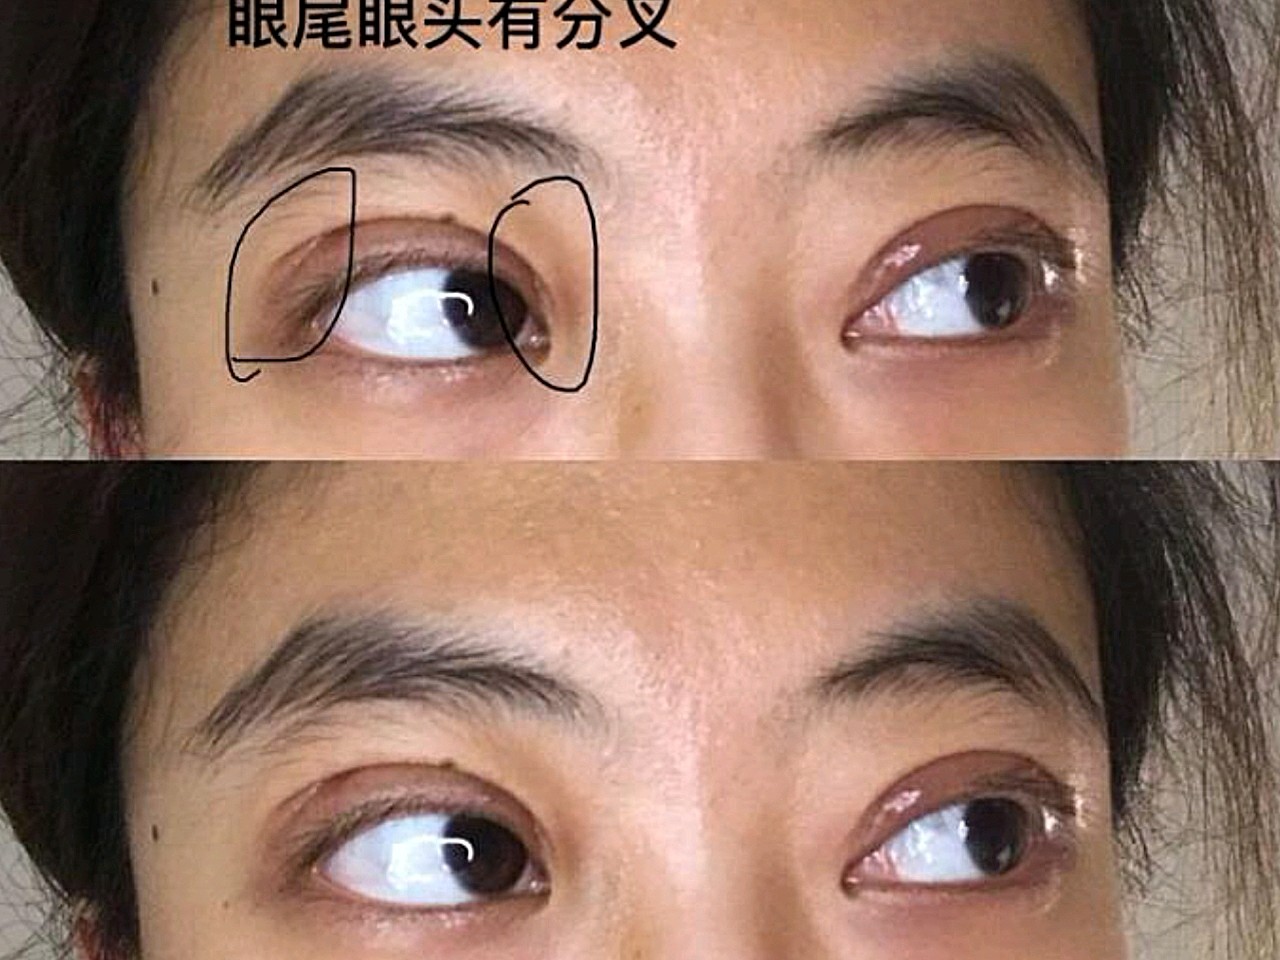 做了全切双眼皮手术,眼头眼尾有分叉是怎么回事,会恢复吗?